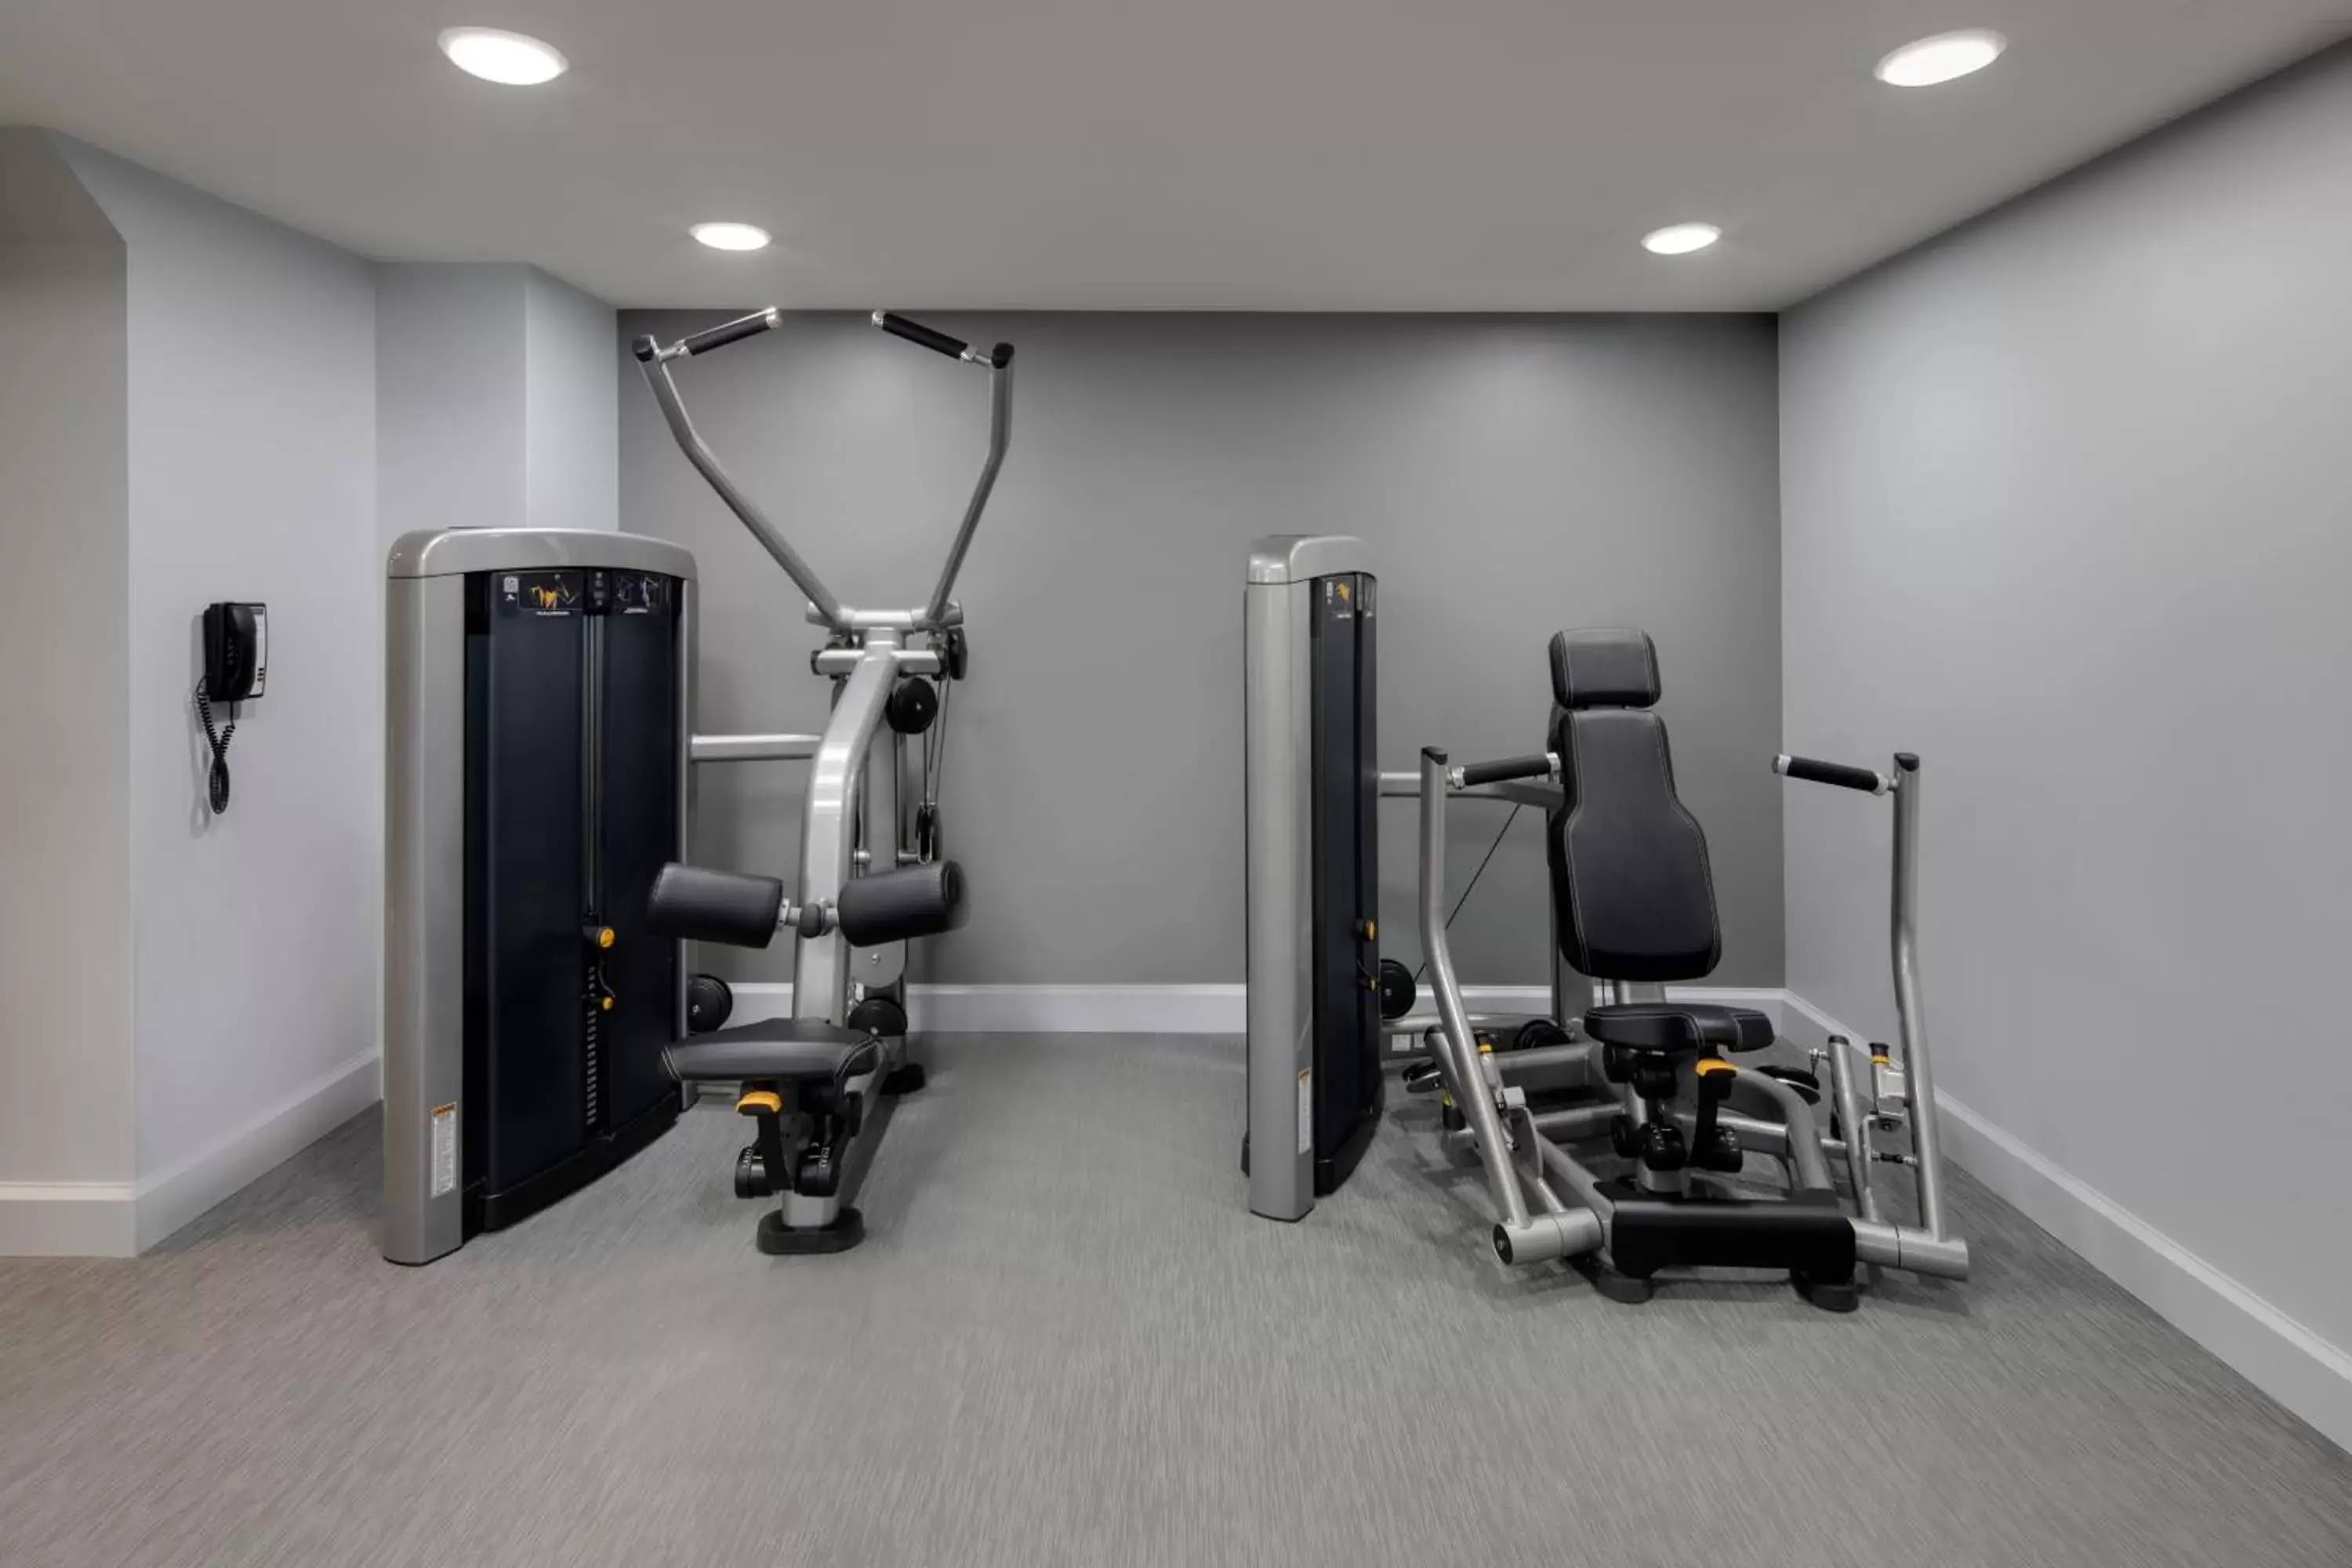 Fitness centre/facilities, Fitness Center/Facilities in Hyatt Regency Milwaukee